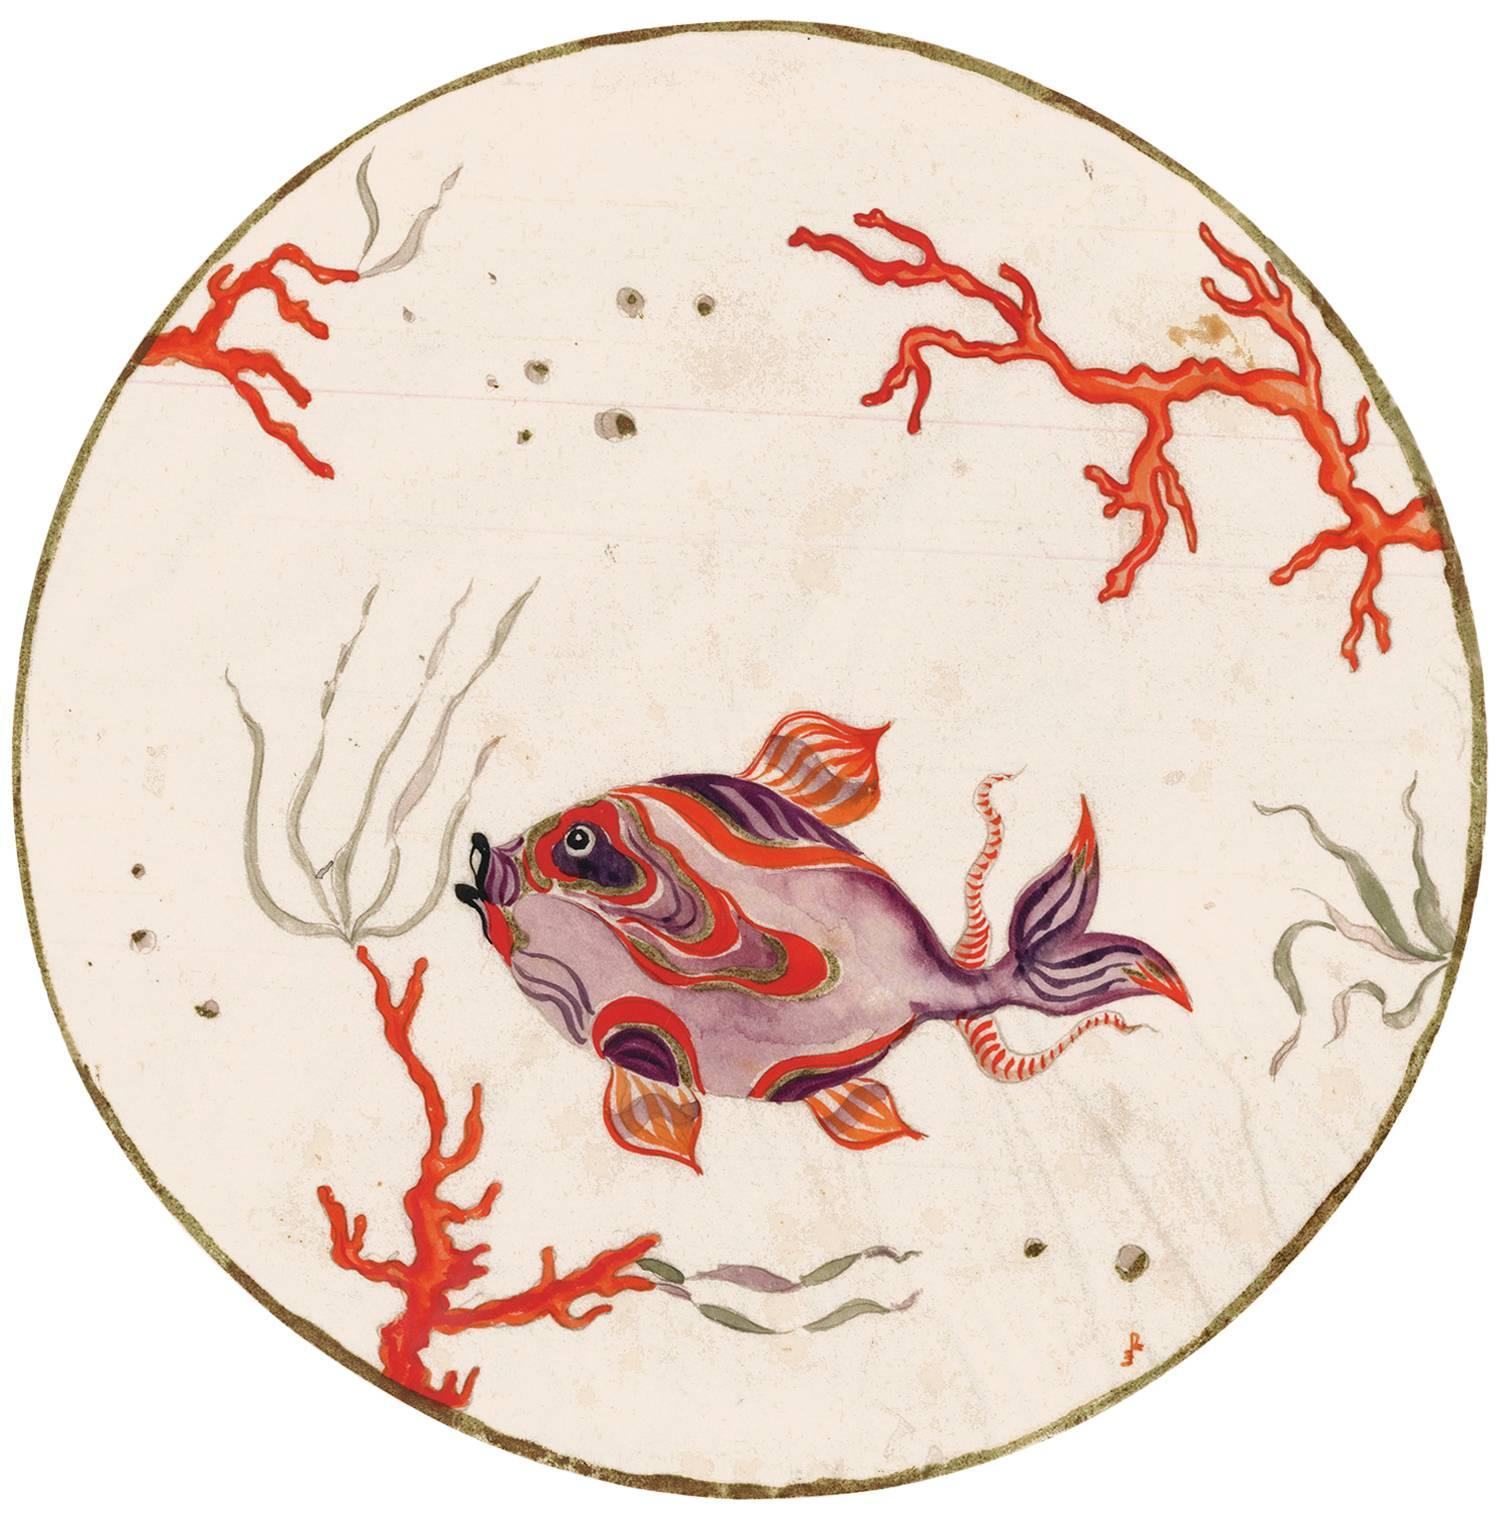 Gouache originale d'un poisson et d'un corail par l'artiste de Wiener Werkstatte, Ena Rottenberg. Signée de ses initiales sur le bord inférieur droit de l'image. Il s'agit probablement d'un design pour une assiette en porcelaine. Rottenberg